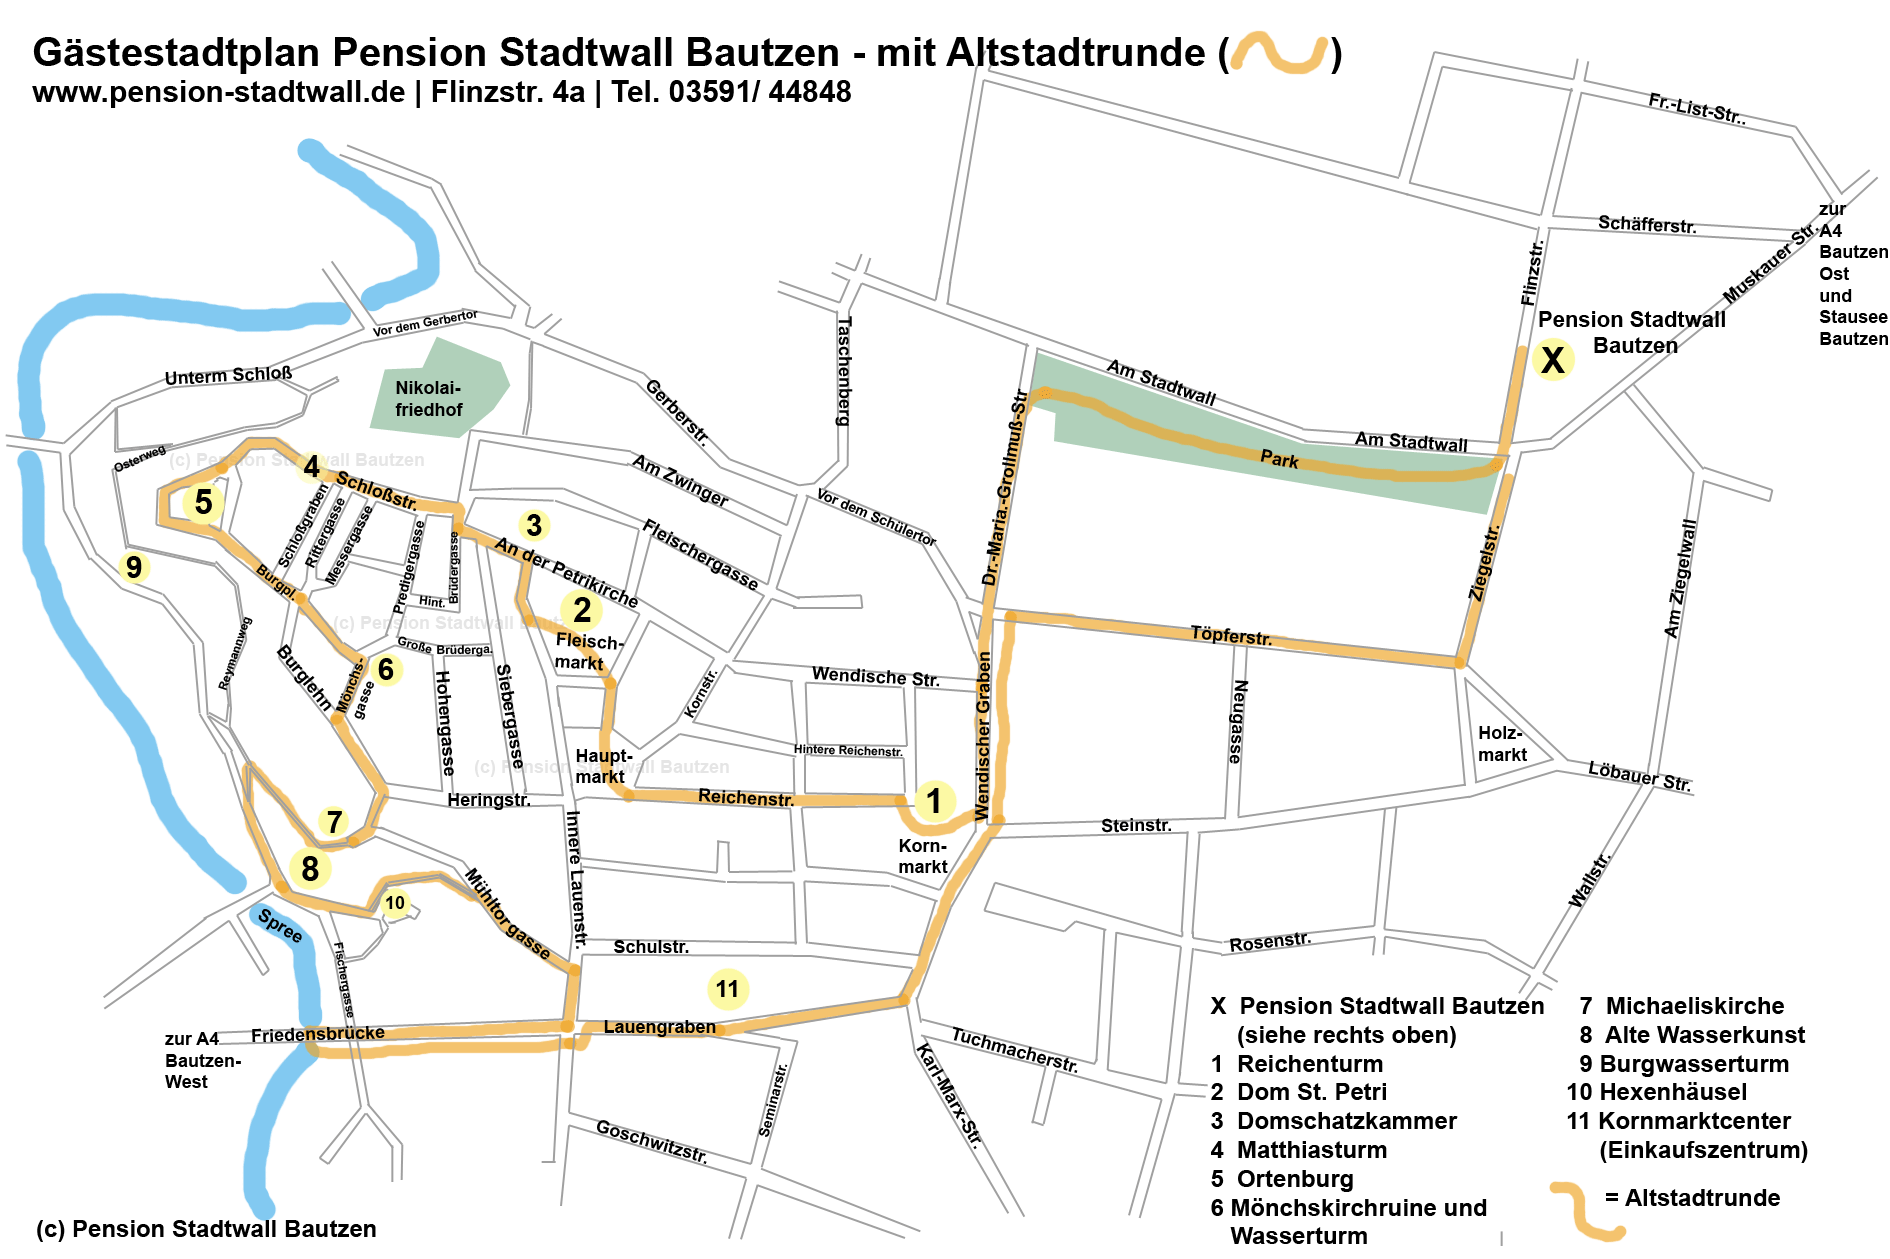 Stadtplan Bautzen